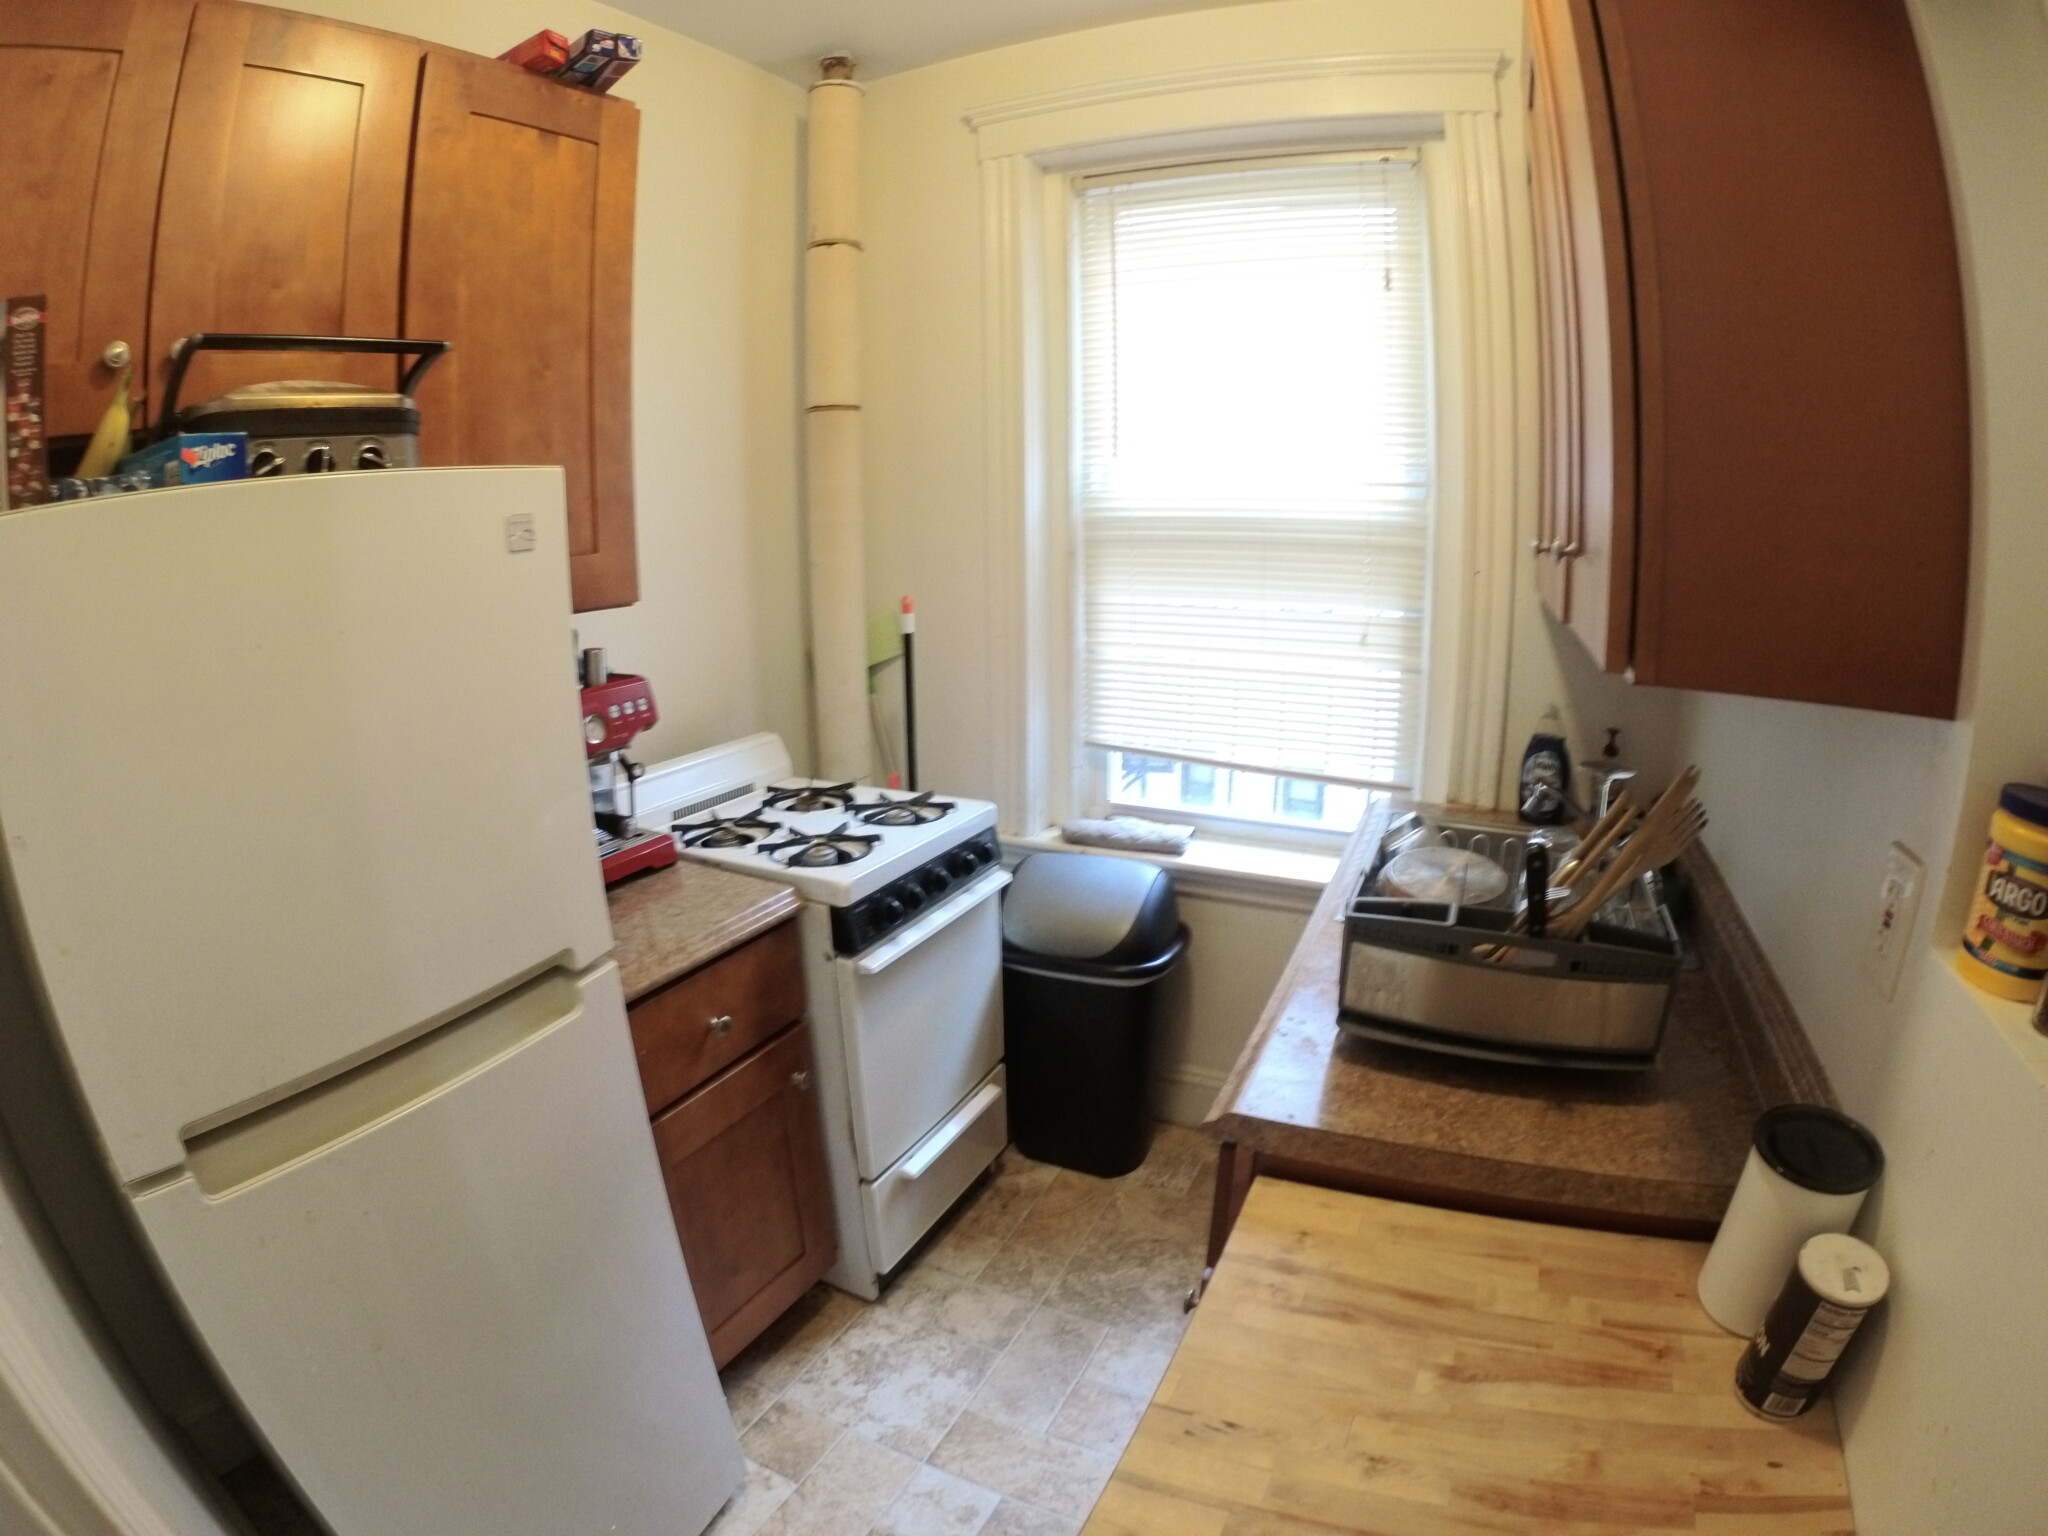 Photos of apartment on Telford St.,Boston MA 02135